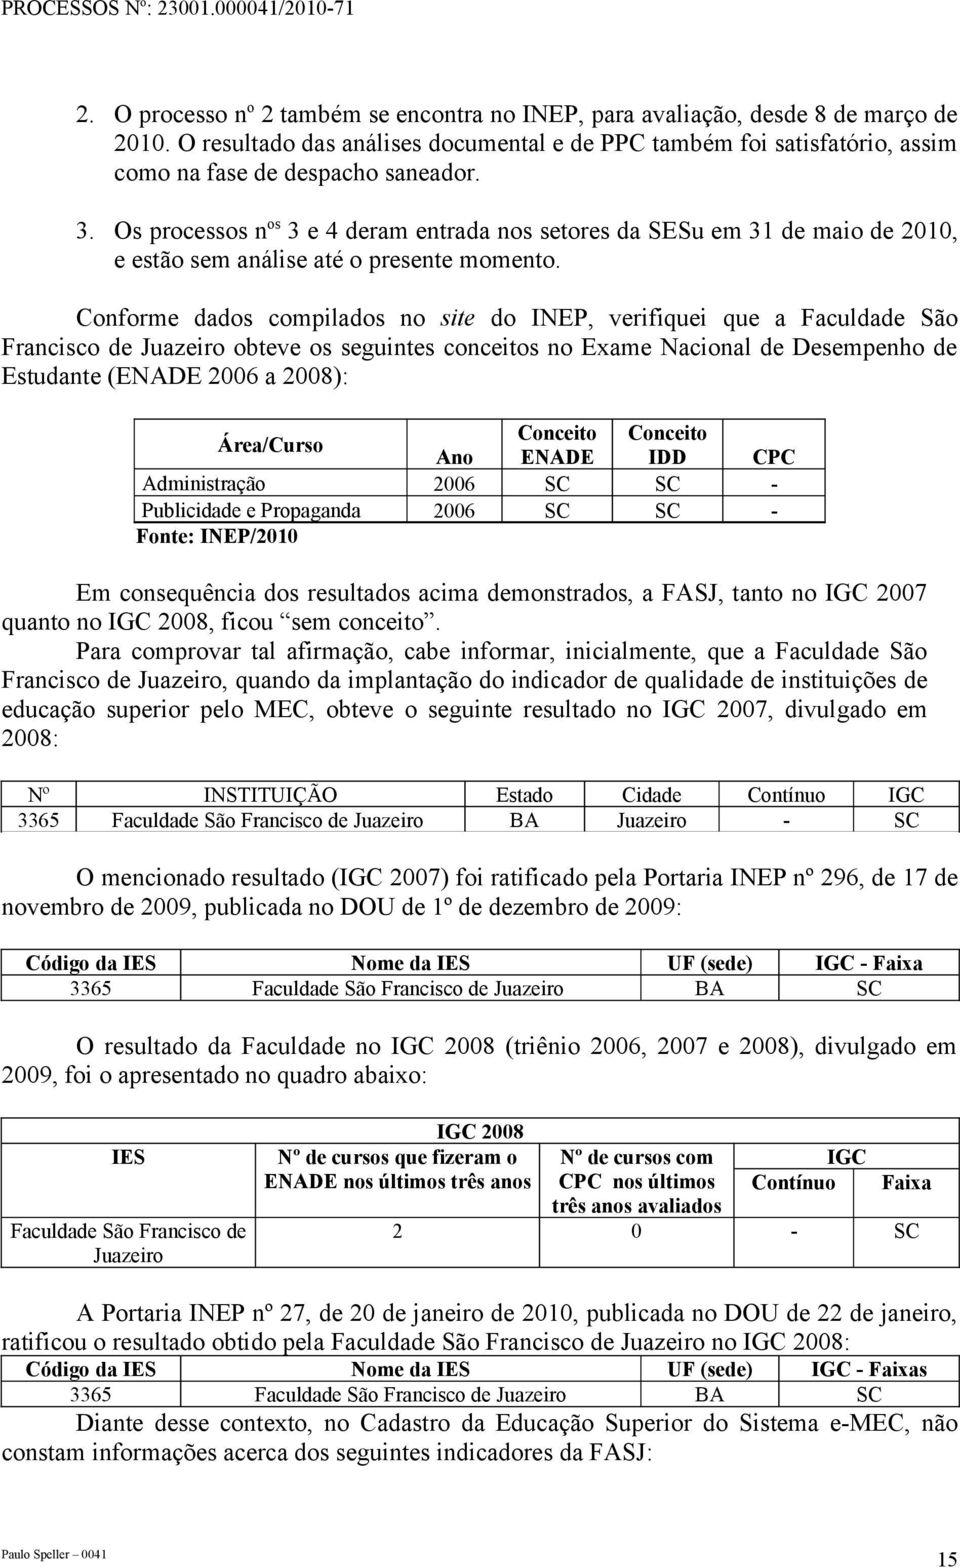 Conforme dados compilados no site do INEP, verifiquei que a Faculdade São Francisco de Juazeiro obteve os seguintes conceitos no Exame Nacional de Desempenho de Estudante (ENADE 2006 a 2008):